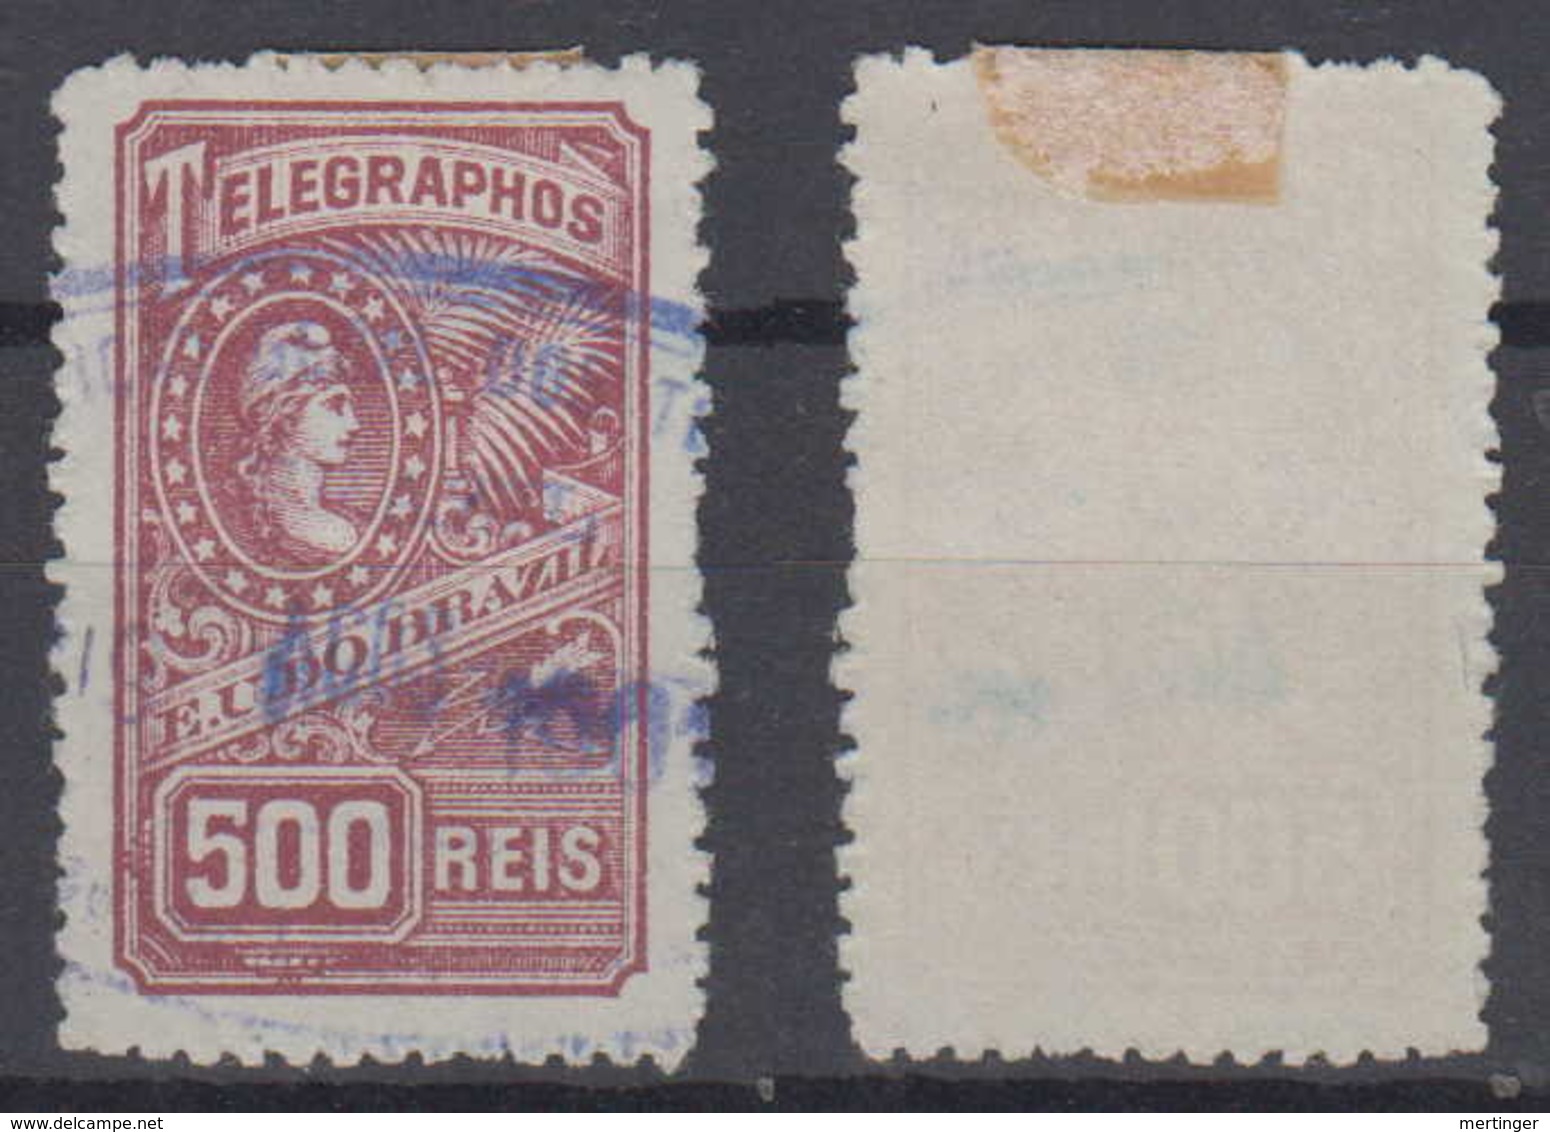 Brazil Brasil Telegrafo Telegraph 1899 500R Used - Telegraphenmarken